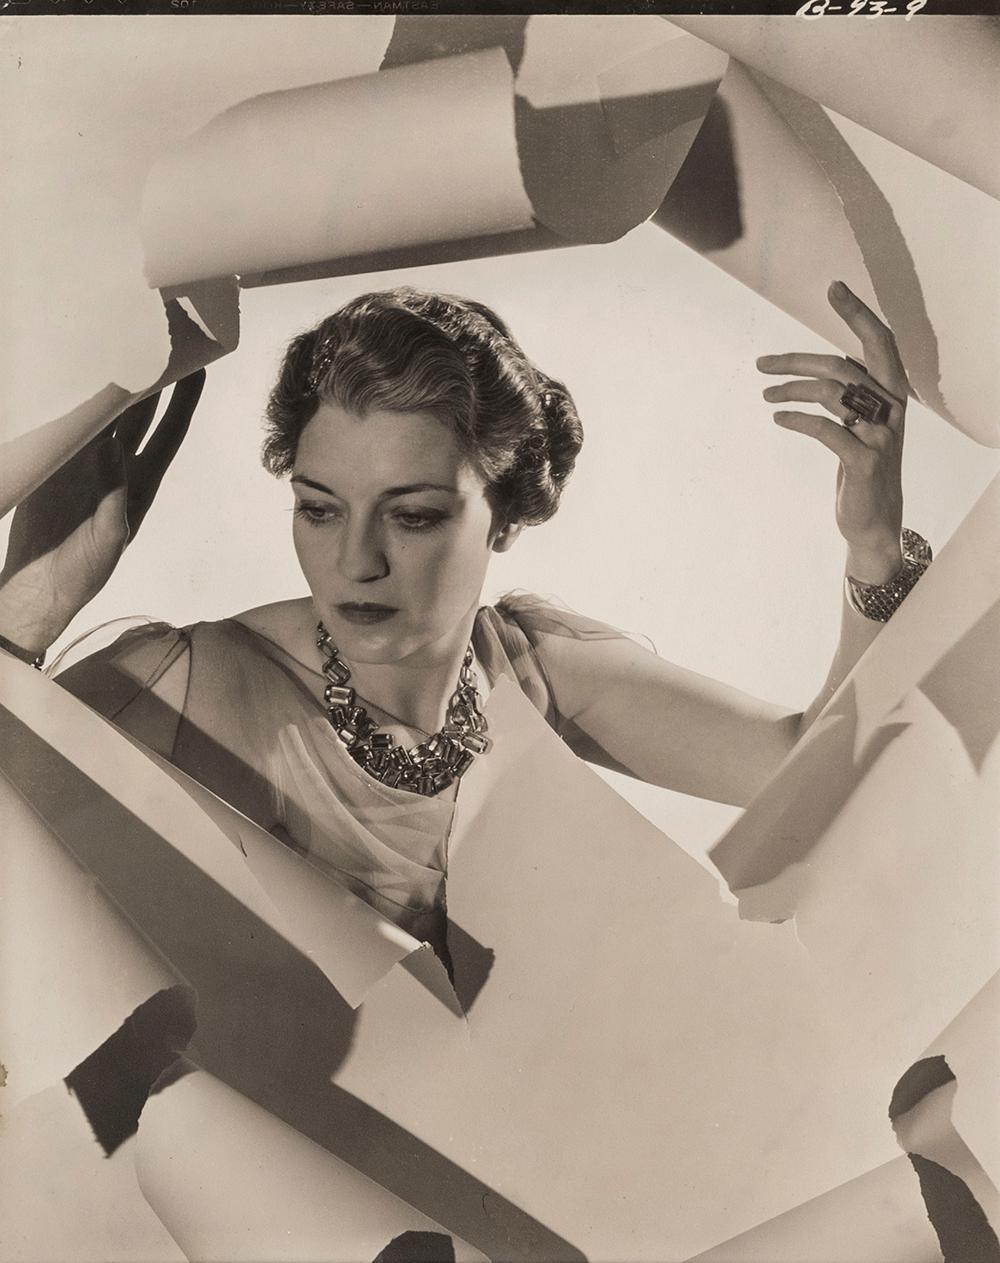 Frau Mona Williams, 1936 - Cecil Beaton (Modeporträtfotografie)
Von unbekannter Hand mit "Mrs Harrison Williams" beschriftet und rückseitig mit den Stempeln des Fotografen und des Sotheby's Cecil Beaton Studio versehen
Silbergelatineabzug, gedruckt